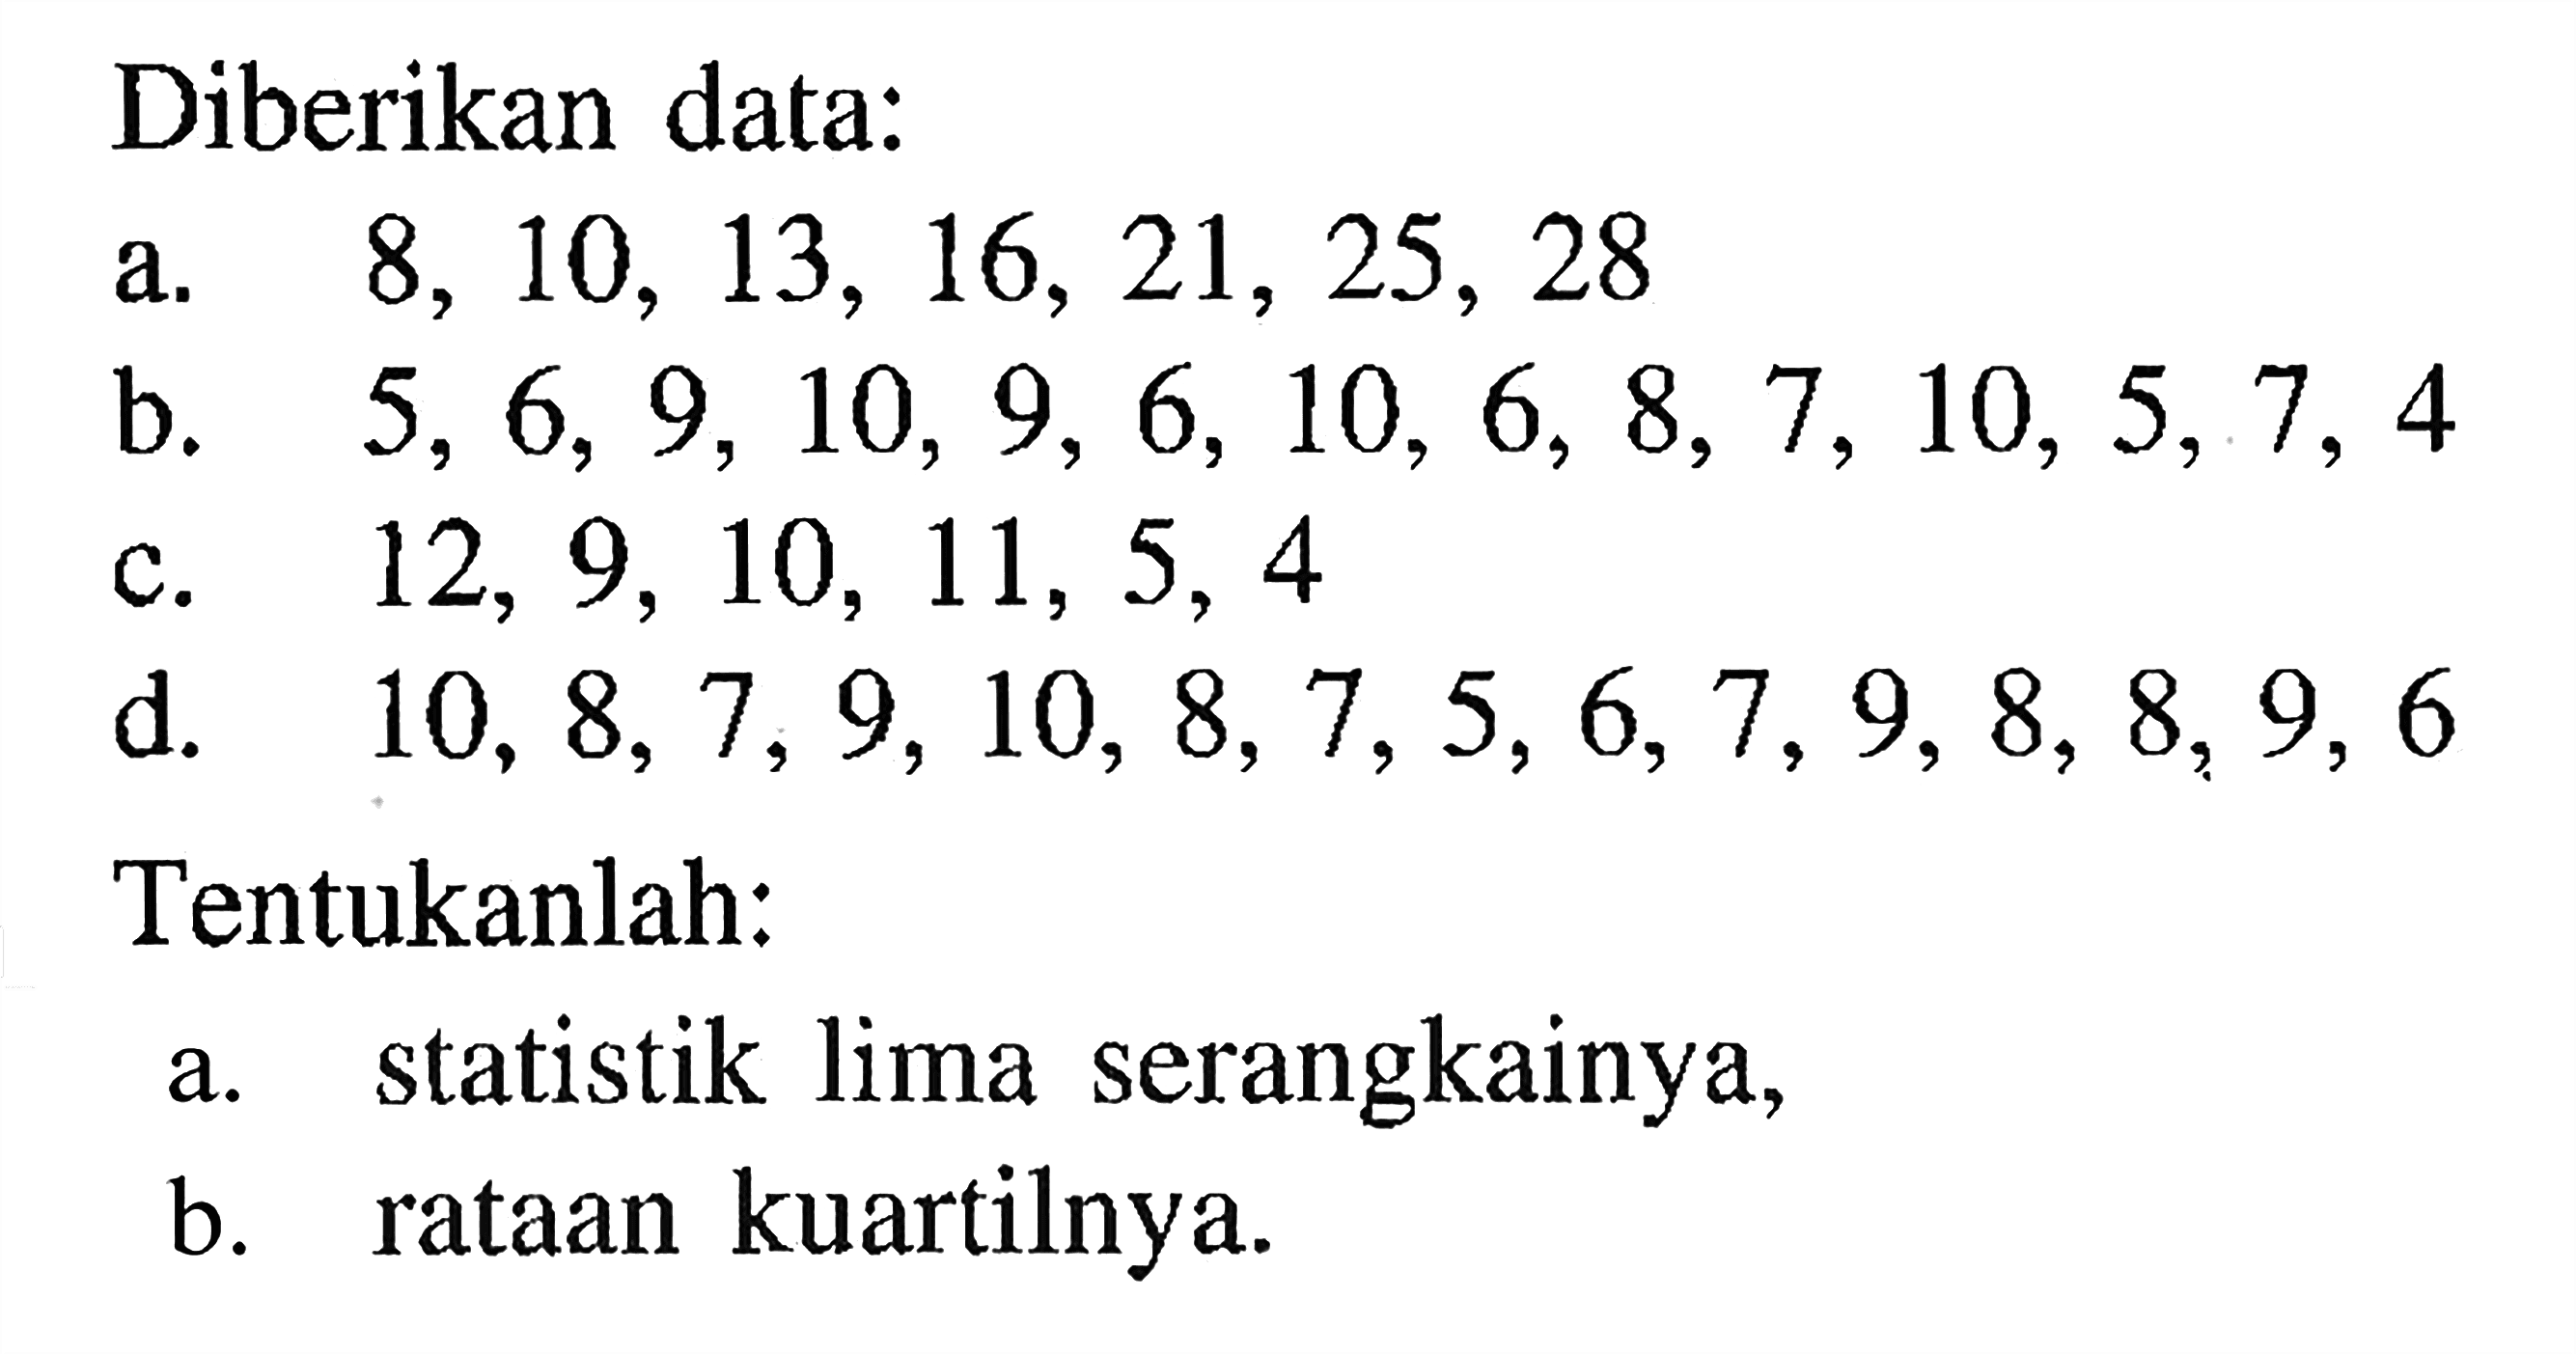 Diberikan data: a. 8,10,13,16,21,25,28 b. 5,6,9,10,9,6,10,6,8,7,10,5,7,4 c. 12,9,10,11,5,4 d. 10,8,7,9,10,8,7,5,6,7,9,8,8,9,6 Tentukanlah: a. statistik lima serangkainya, b. rataan kuartilnya.